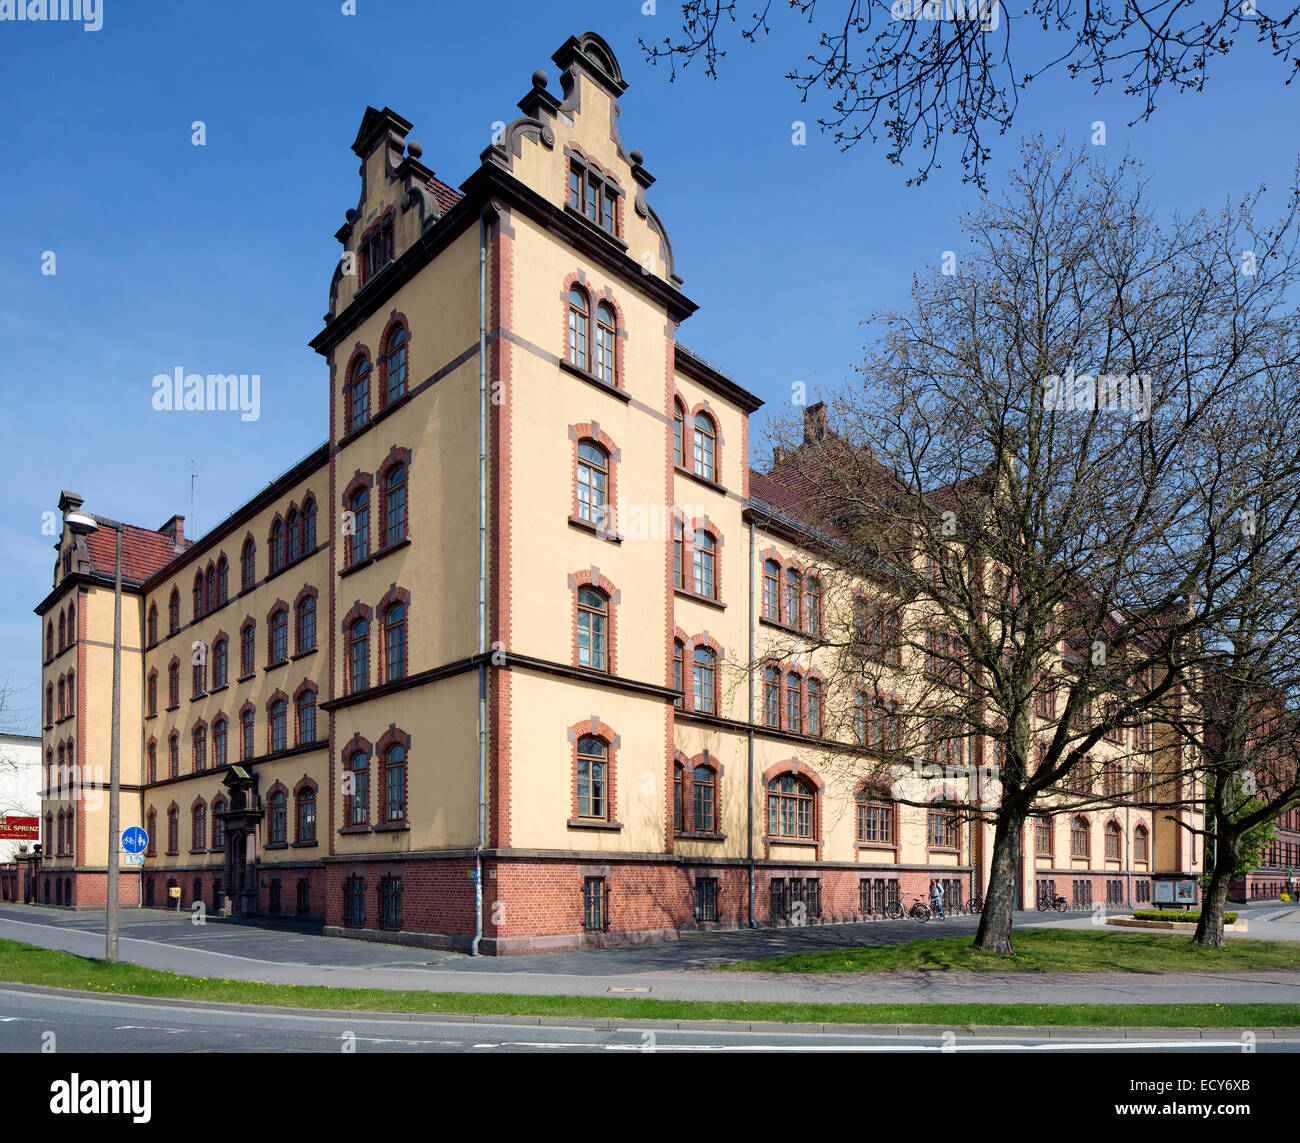 Ehemalige Kaserne am Pferdemarkt Quadrat, jetzt Landesbibliothek, Oldenburg, Niedersachsen, Deutschland Stockfoto